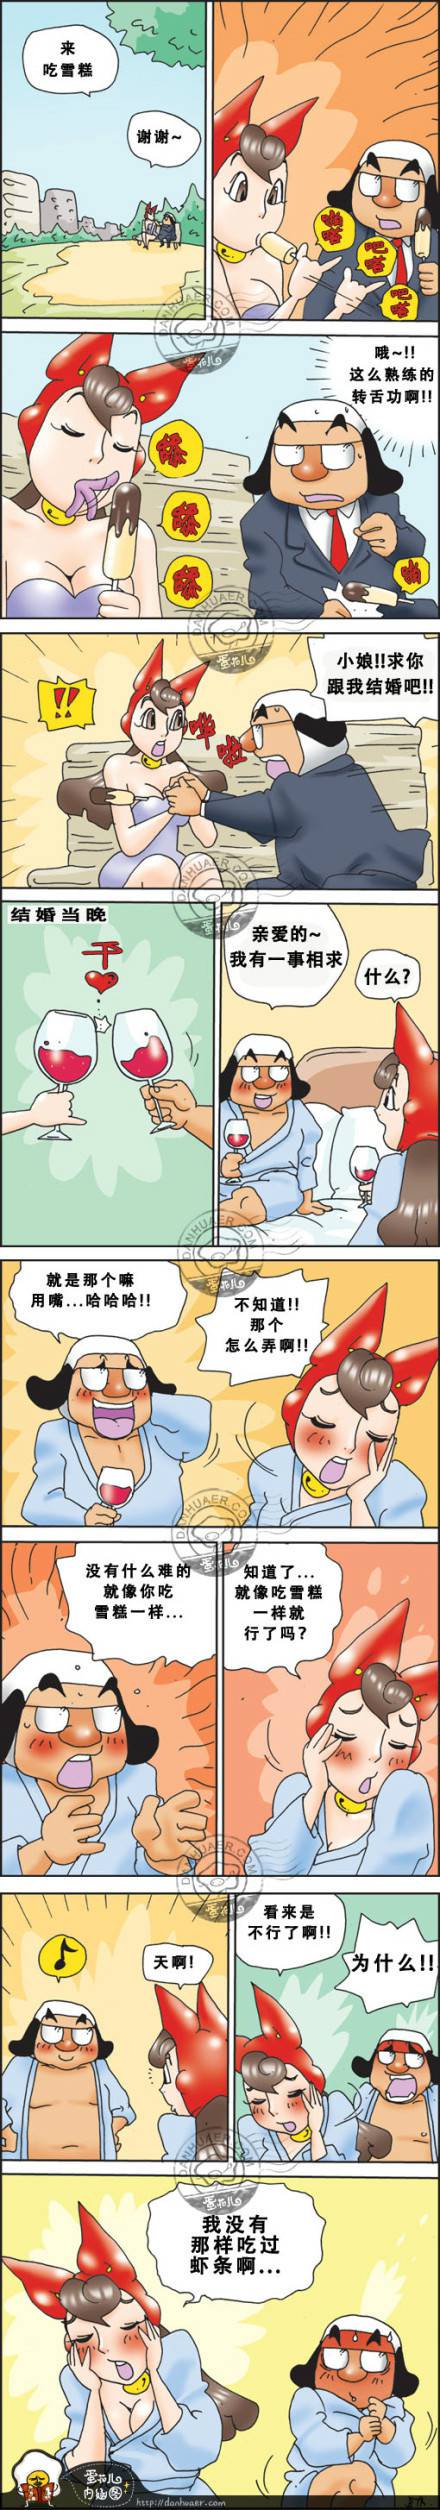 邪恶漫画爆笑囧图第281刊：偷内裤的小偷